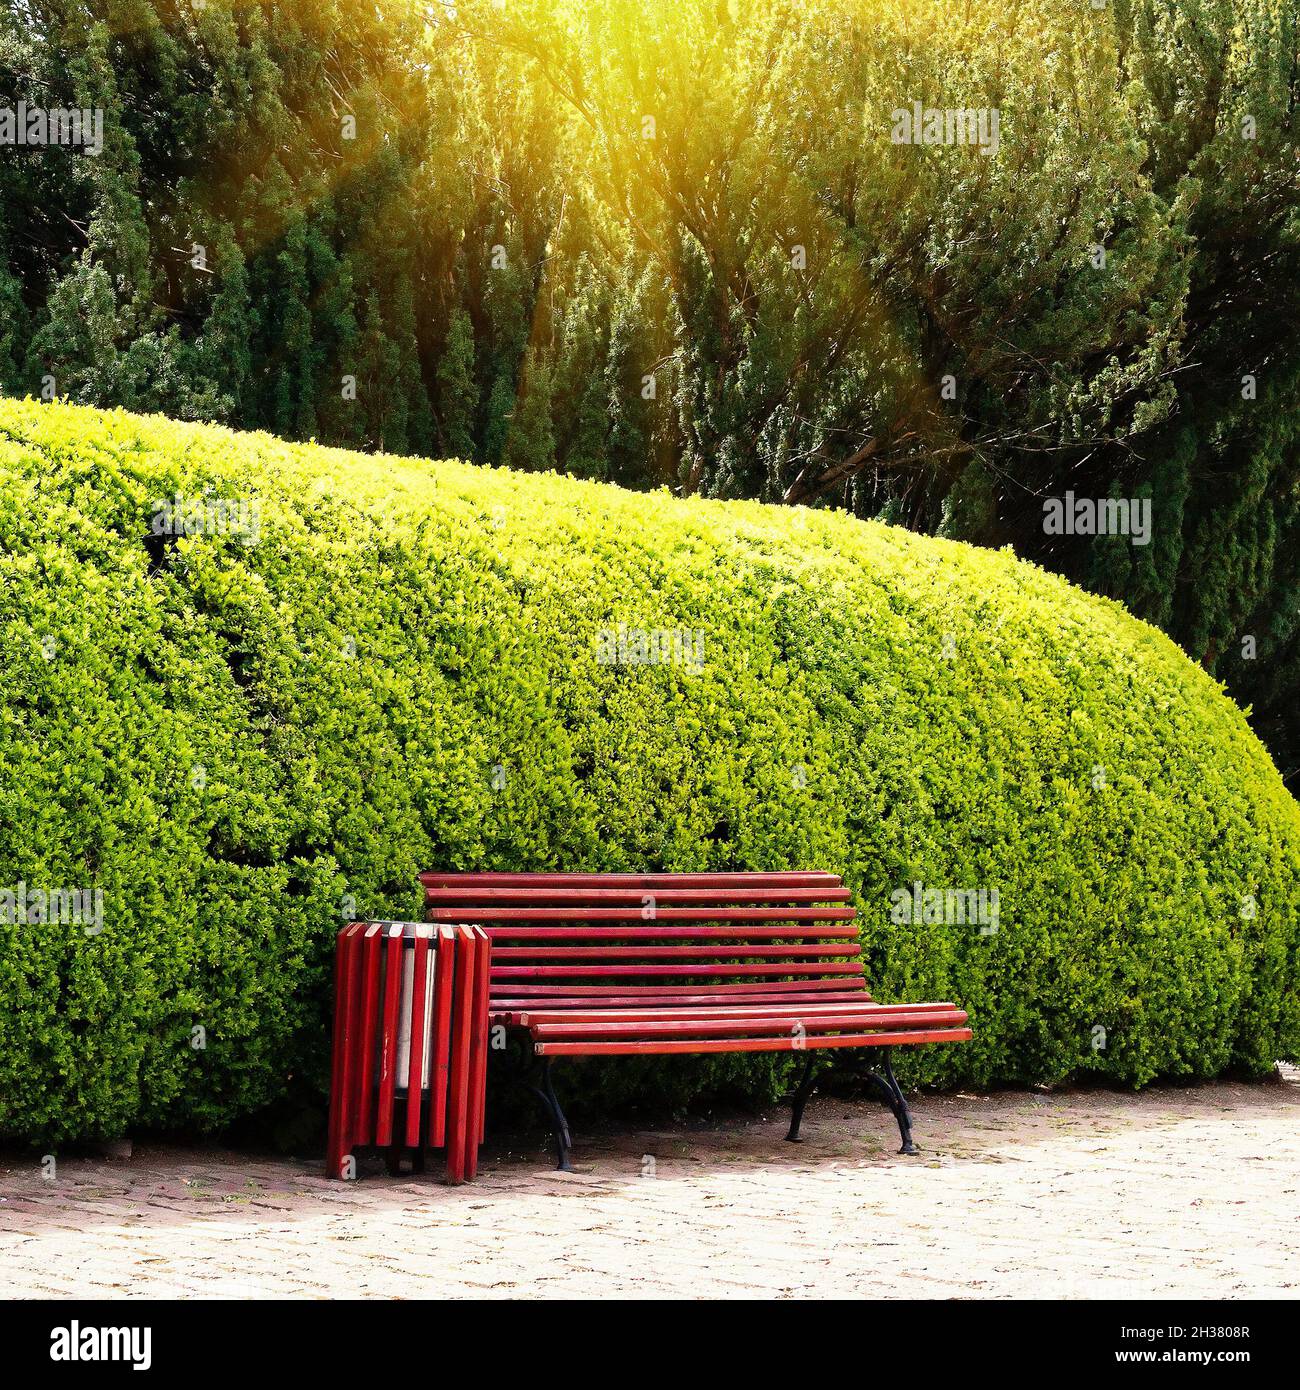 Banc en bois sur l'arrière-plan taillé arbuste à feuilles persistantes dans un parc public.L'été.Conception de paysage Banque D'Images